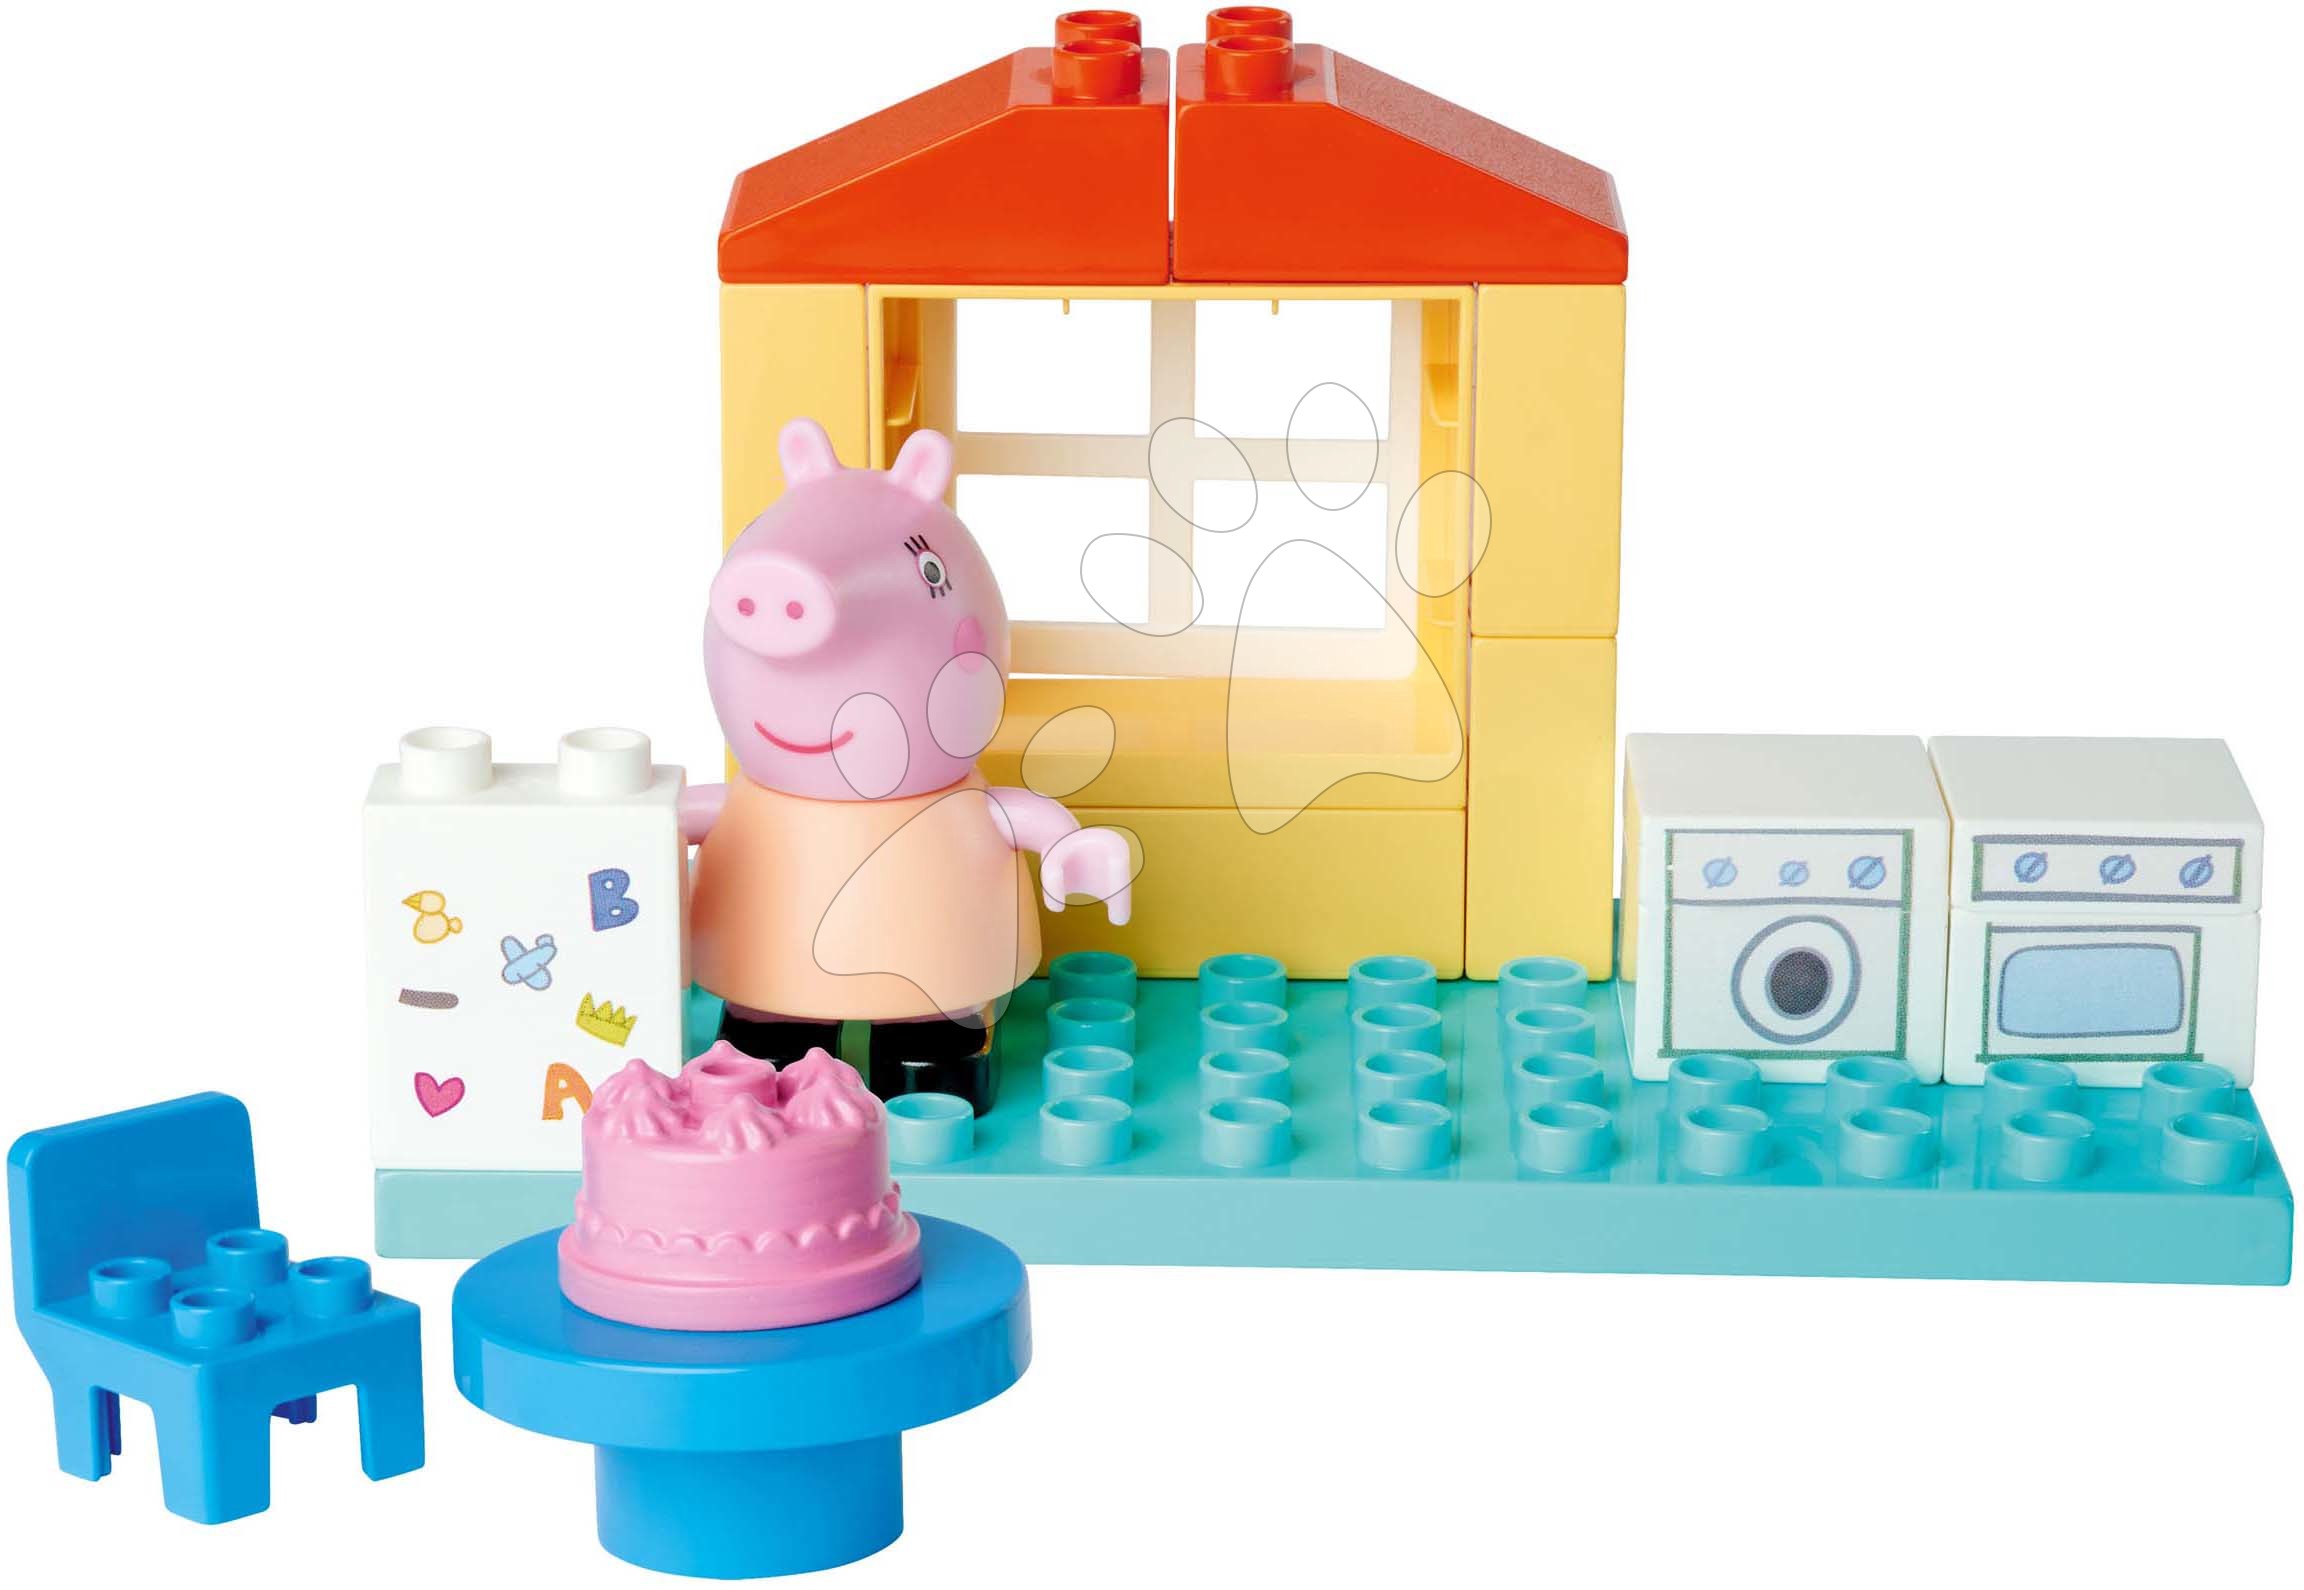 Stavebnica Peppa Pig Basic Set PlayBig Bloxx BIG s figúrkou v kuchyni od 1,5-5 rokov